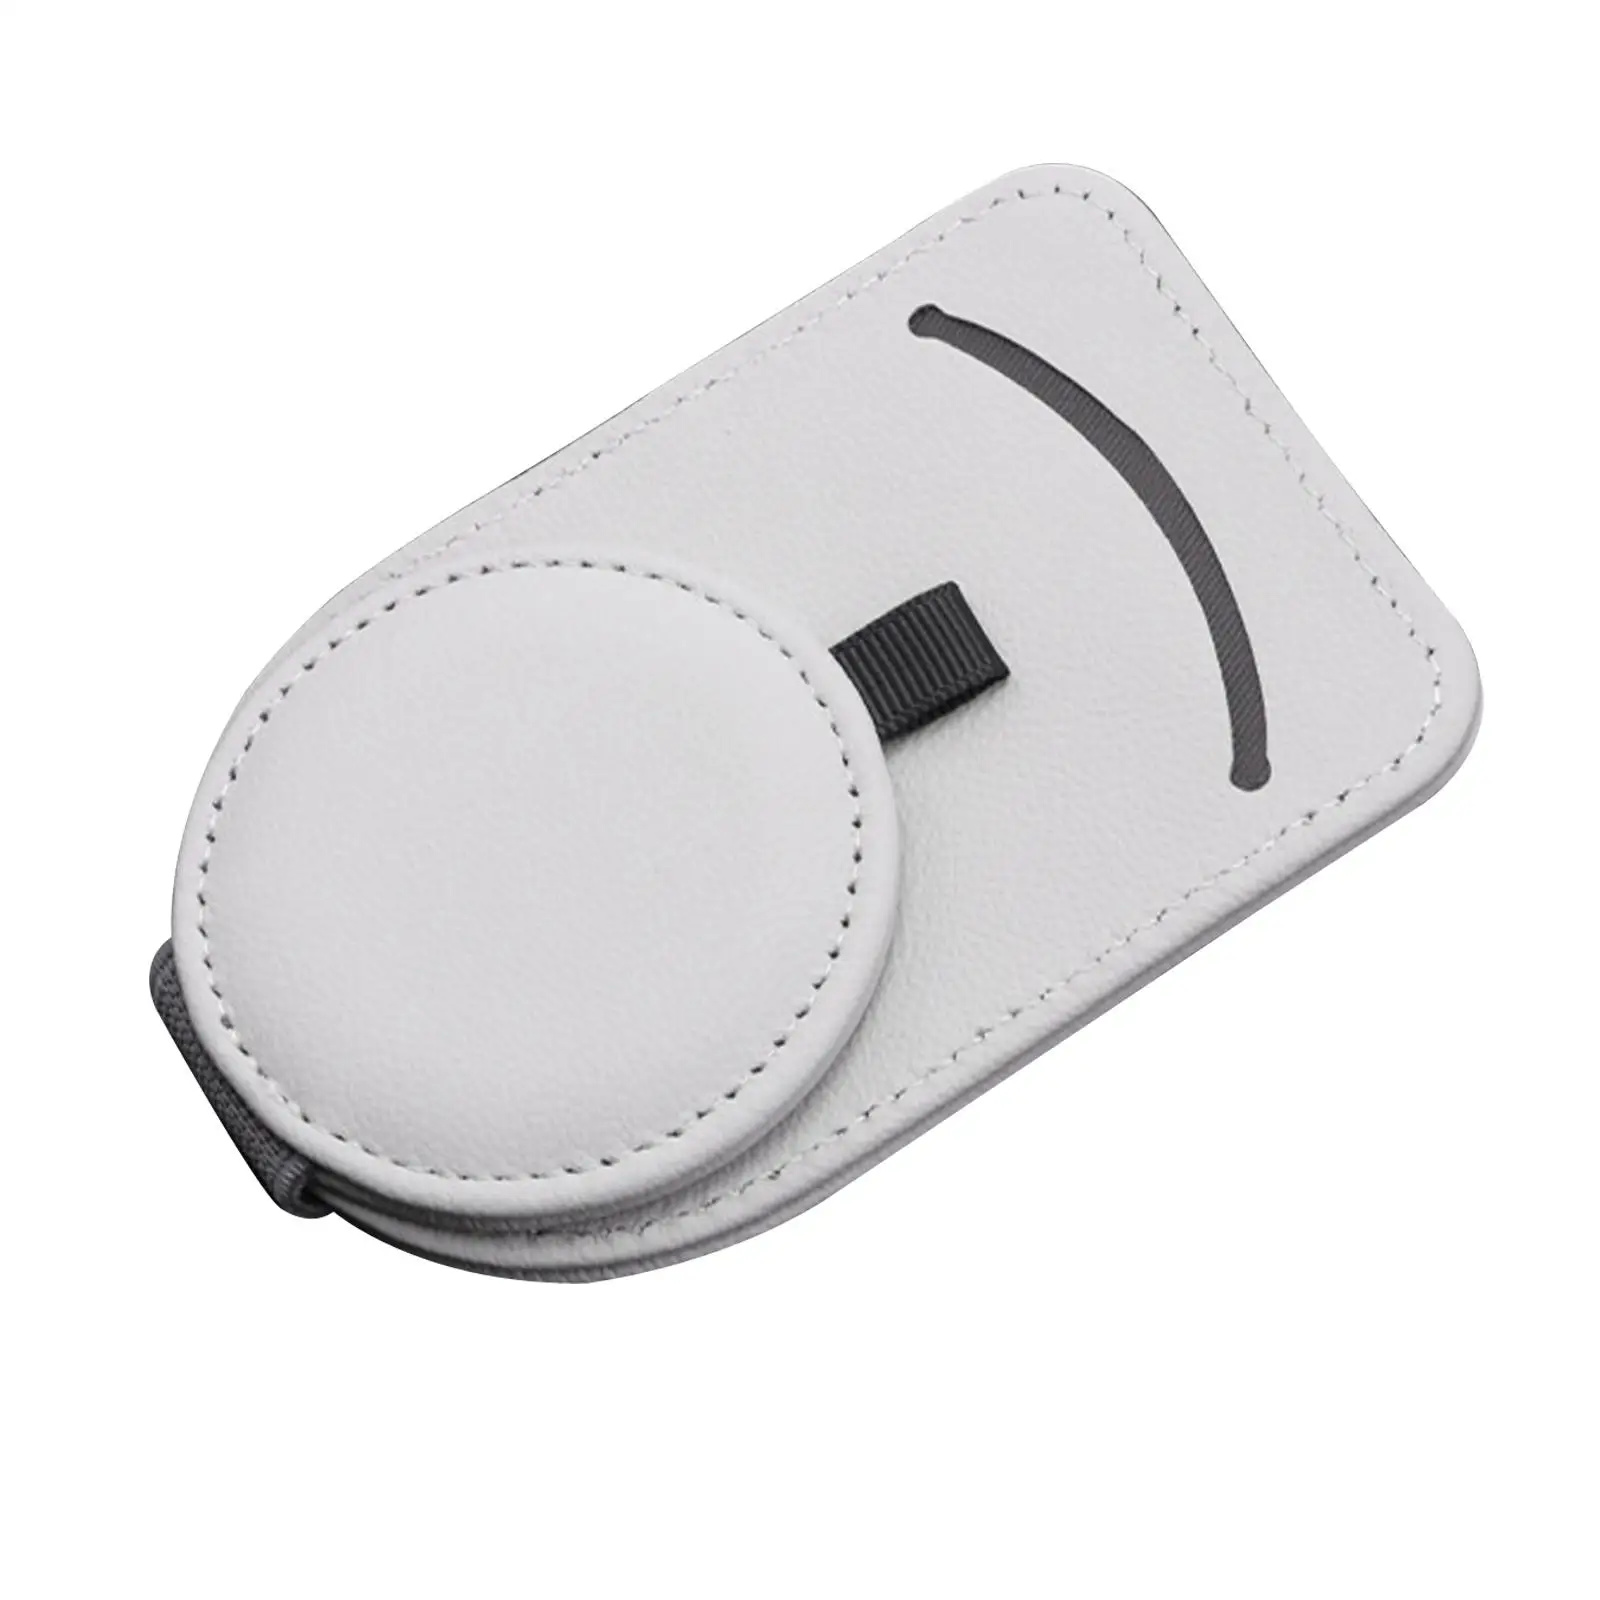 Holder clip glasses pen portable for car sun visor card storage